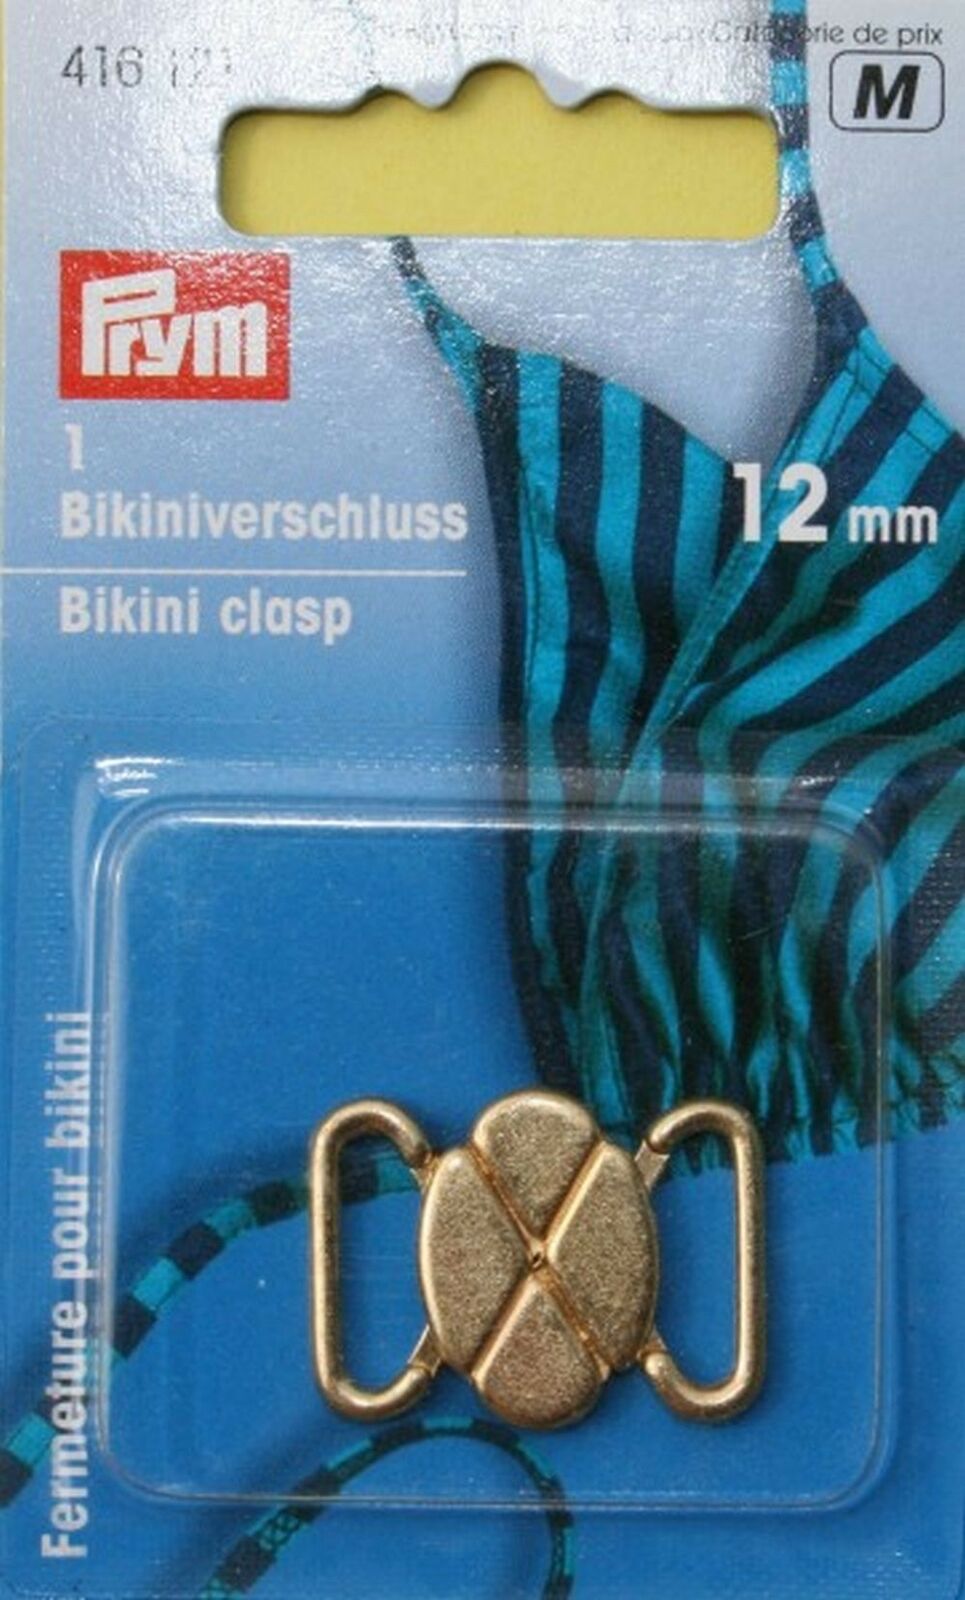 Bikini cierre 12mm metal Matt silberfbg prym 416120